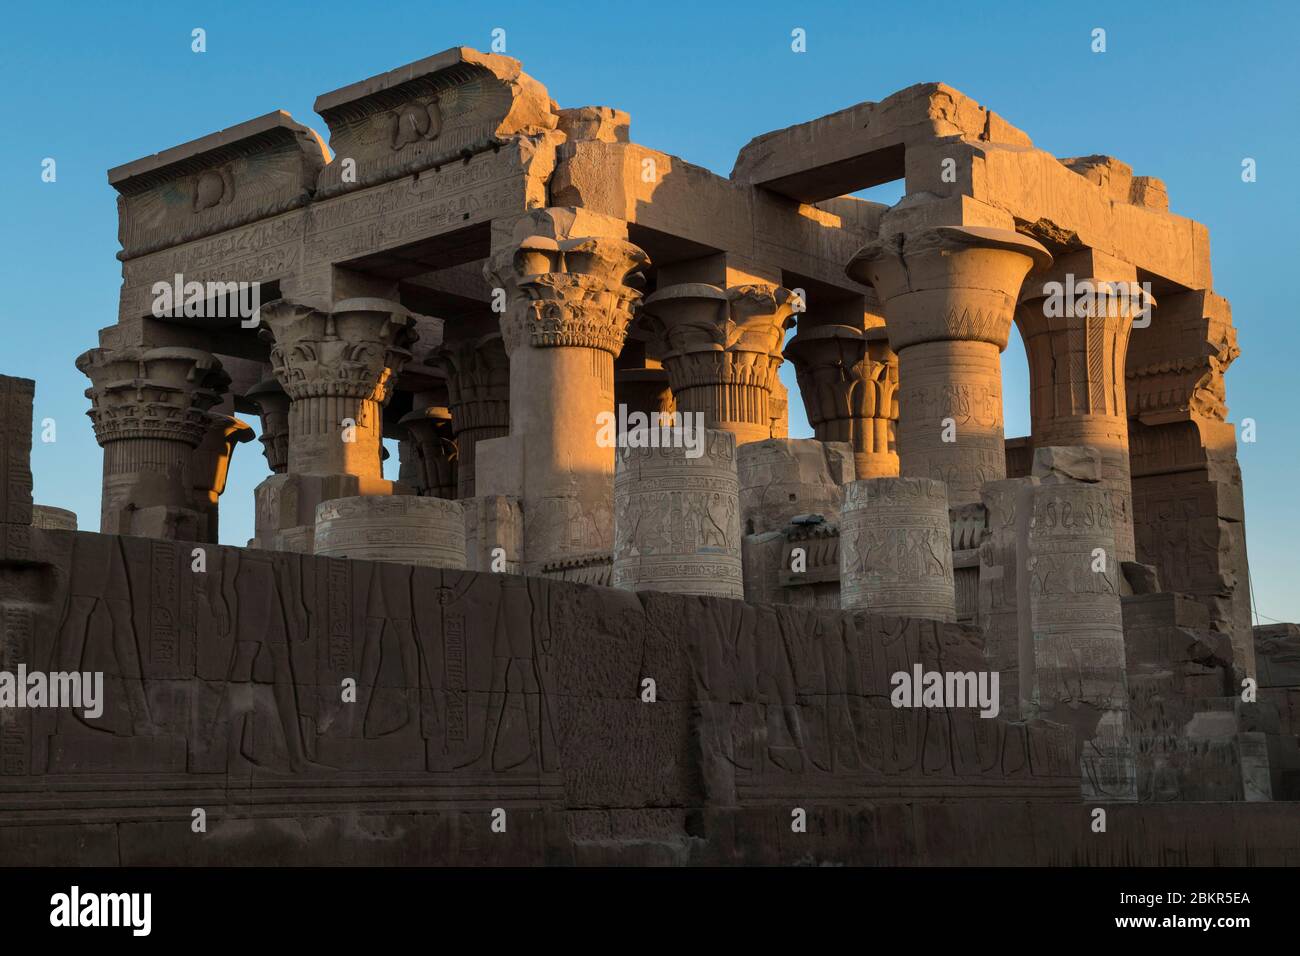 Egipto, Alto Egipto, valle del Nilo, templo Kom Ombo dedicado al dios cocodrilo Sobek y al dios Haroeris Foto de stock